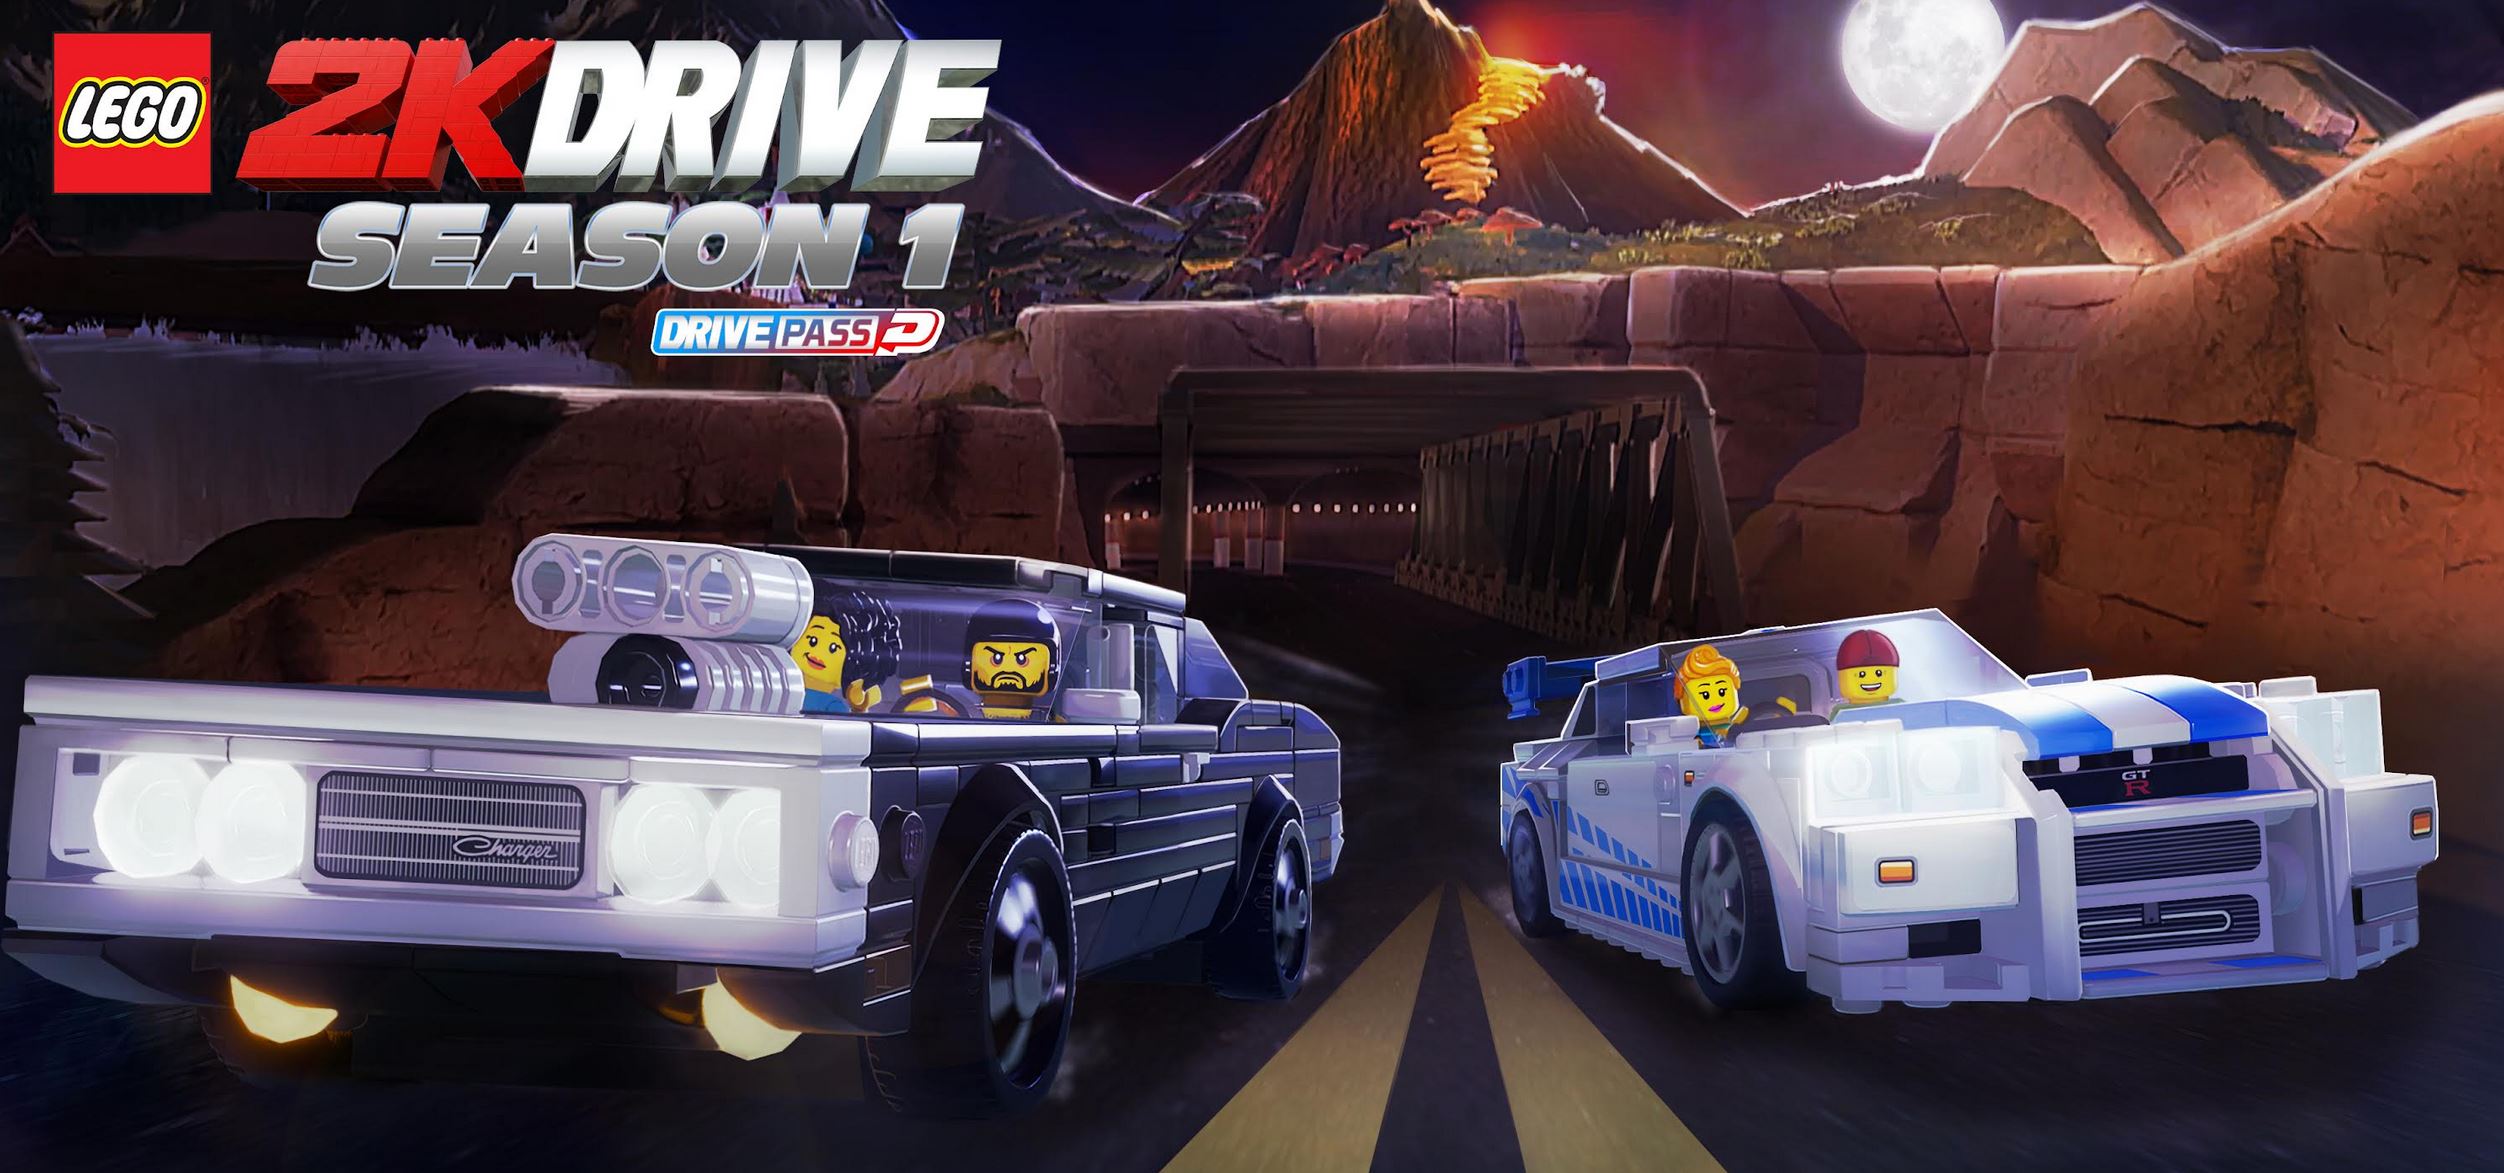 LEGO 2K Drive - Drive Pass Stagione 1 in uscita il 28 giugno 